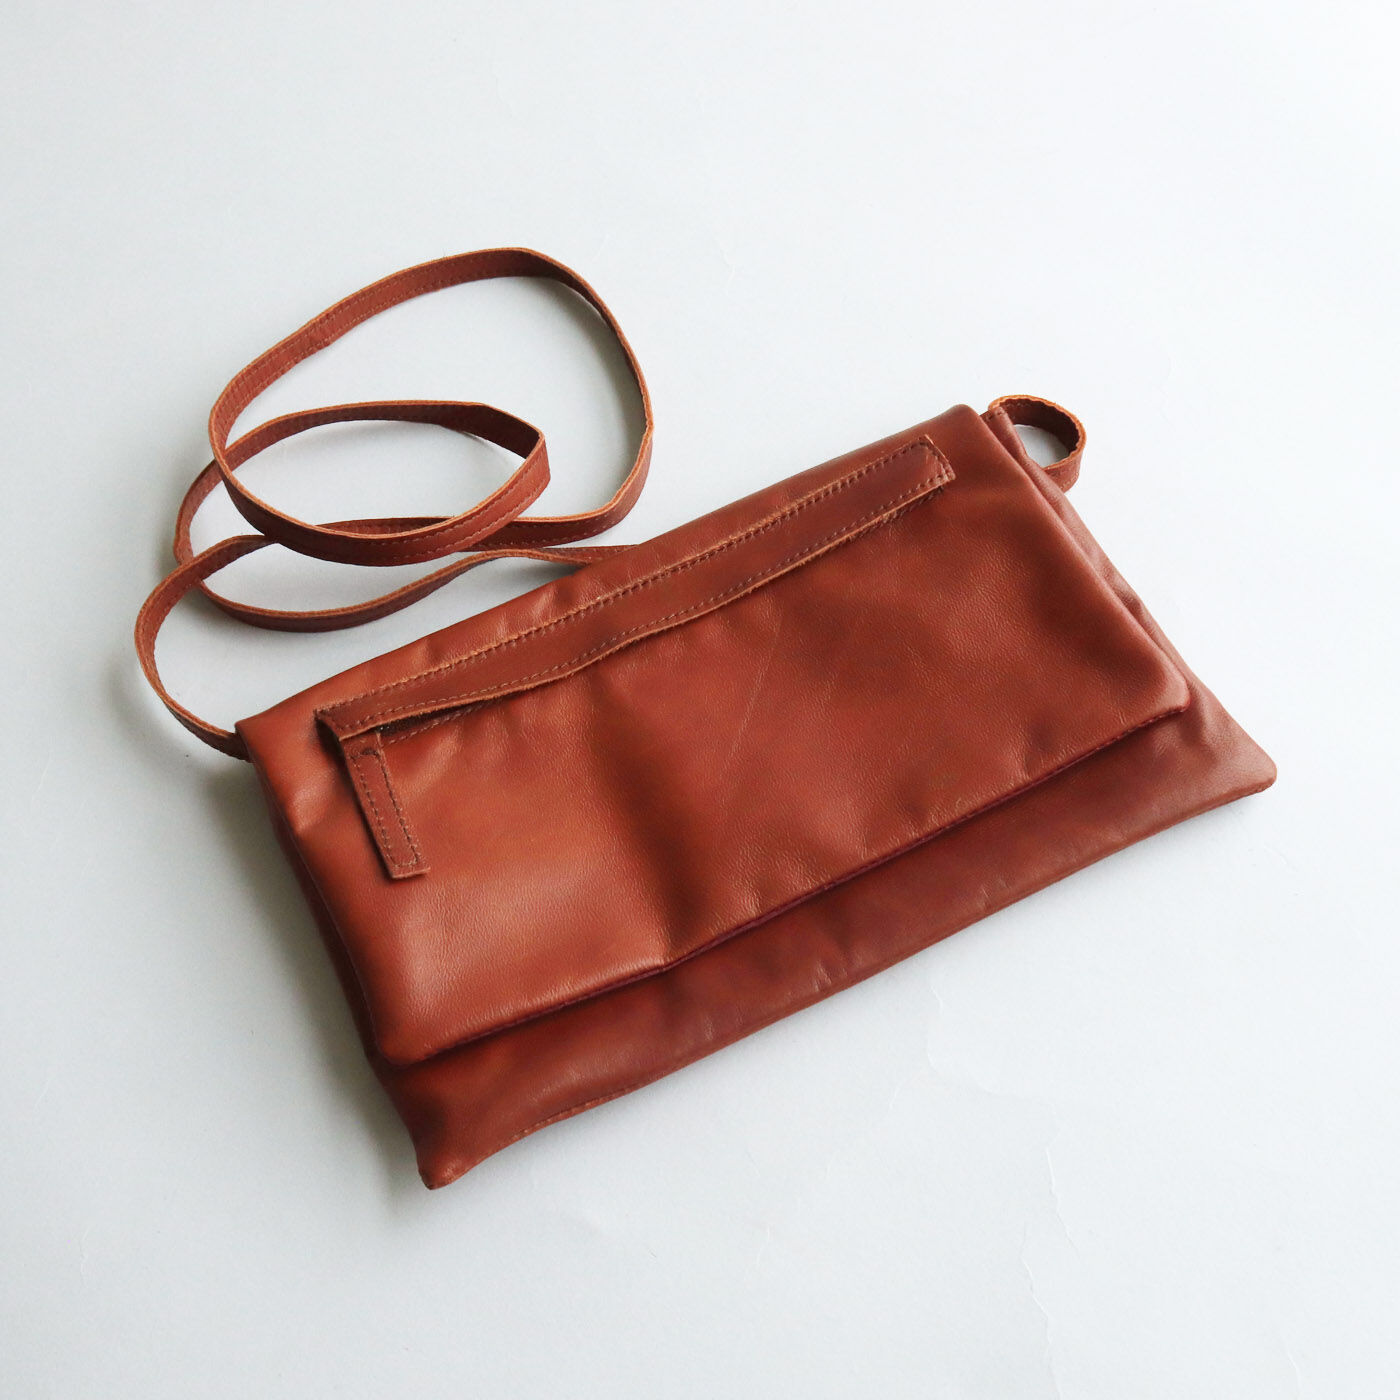 ＆Stories|服飾作家と作った 職人本革のショルダーワークバッグ〈ブラウン〉|ふたの外側には便利なファスナーポケット付き。